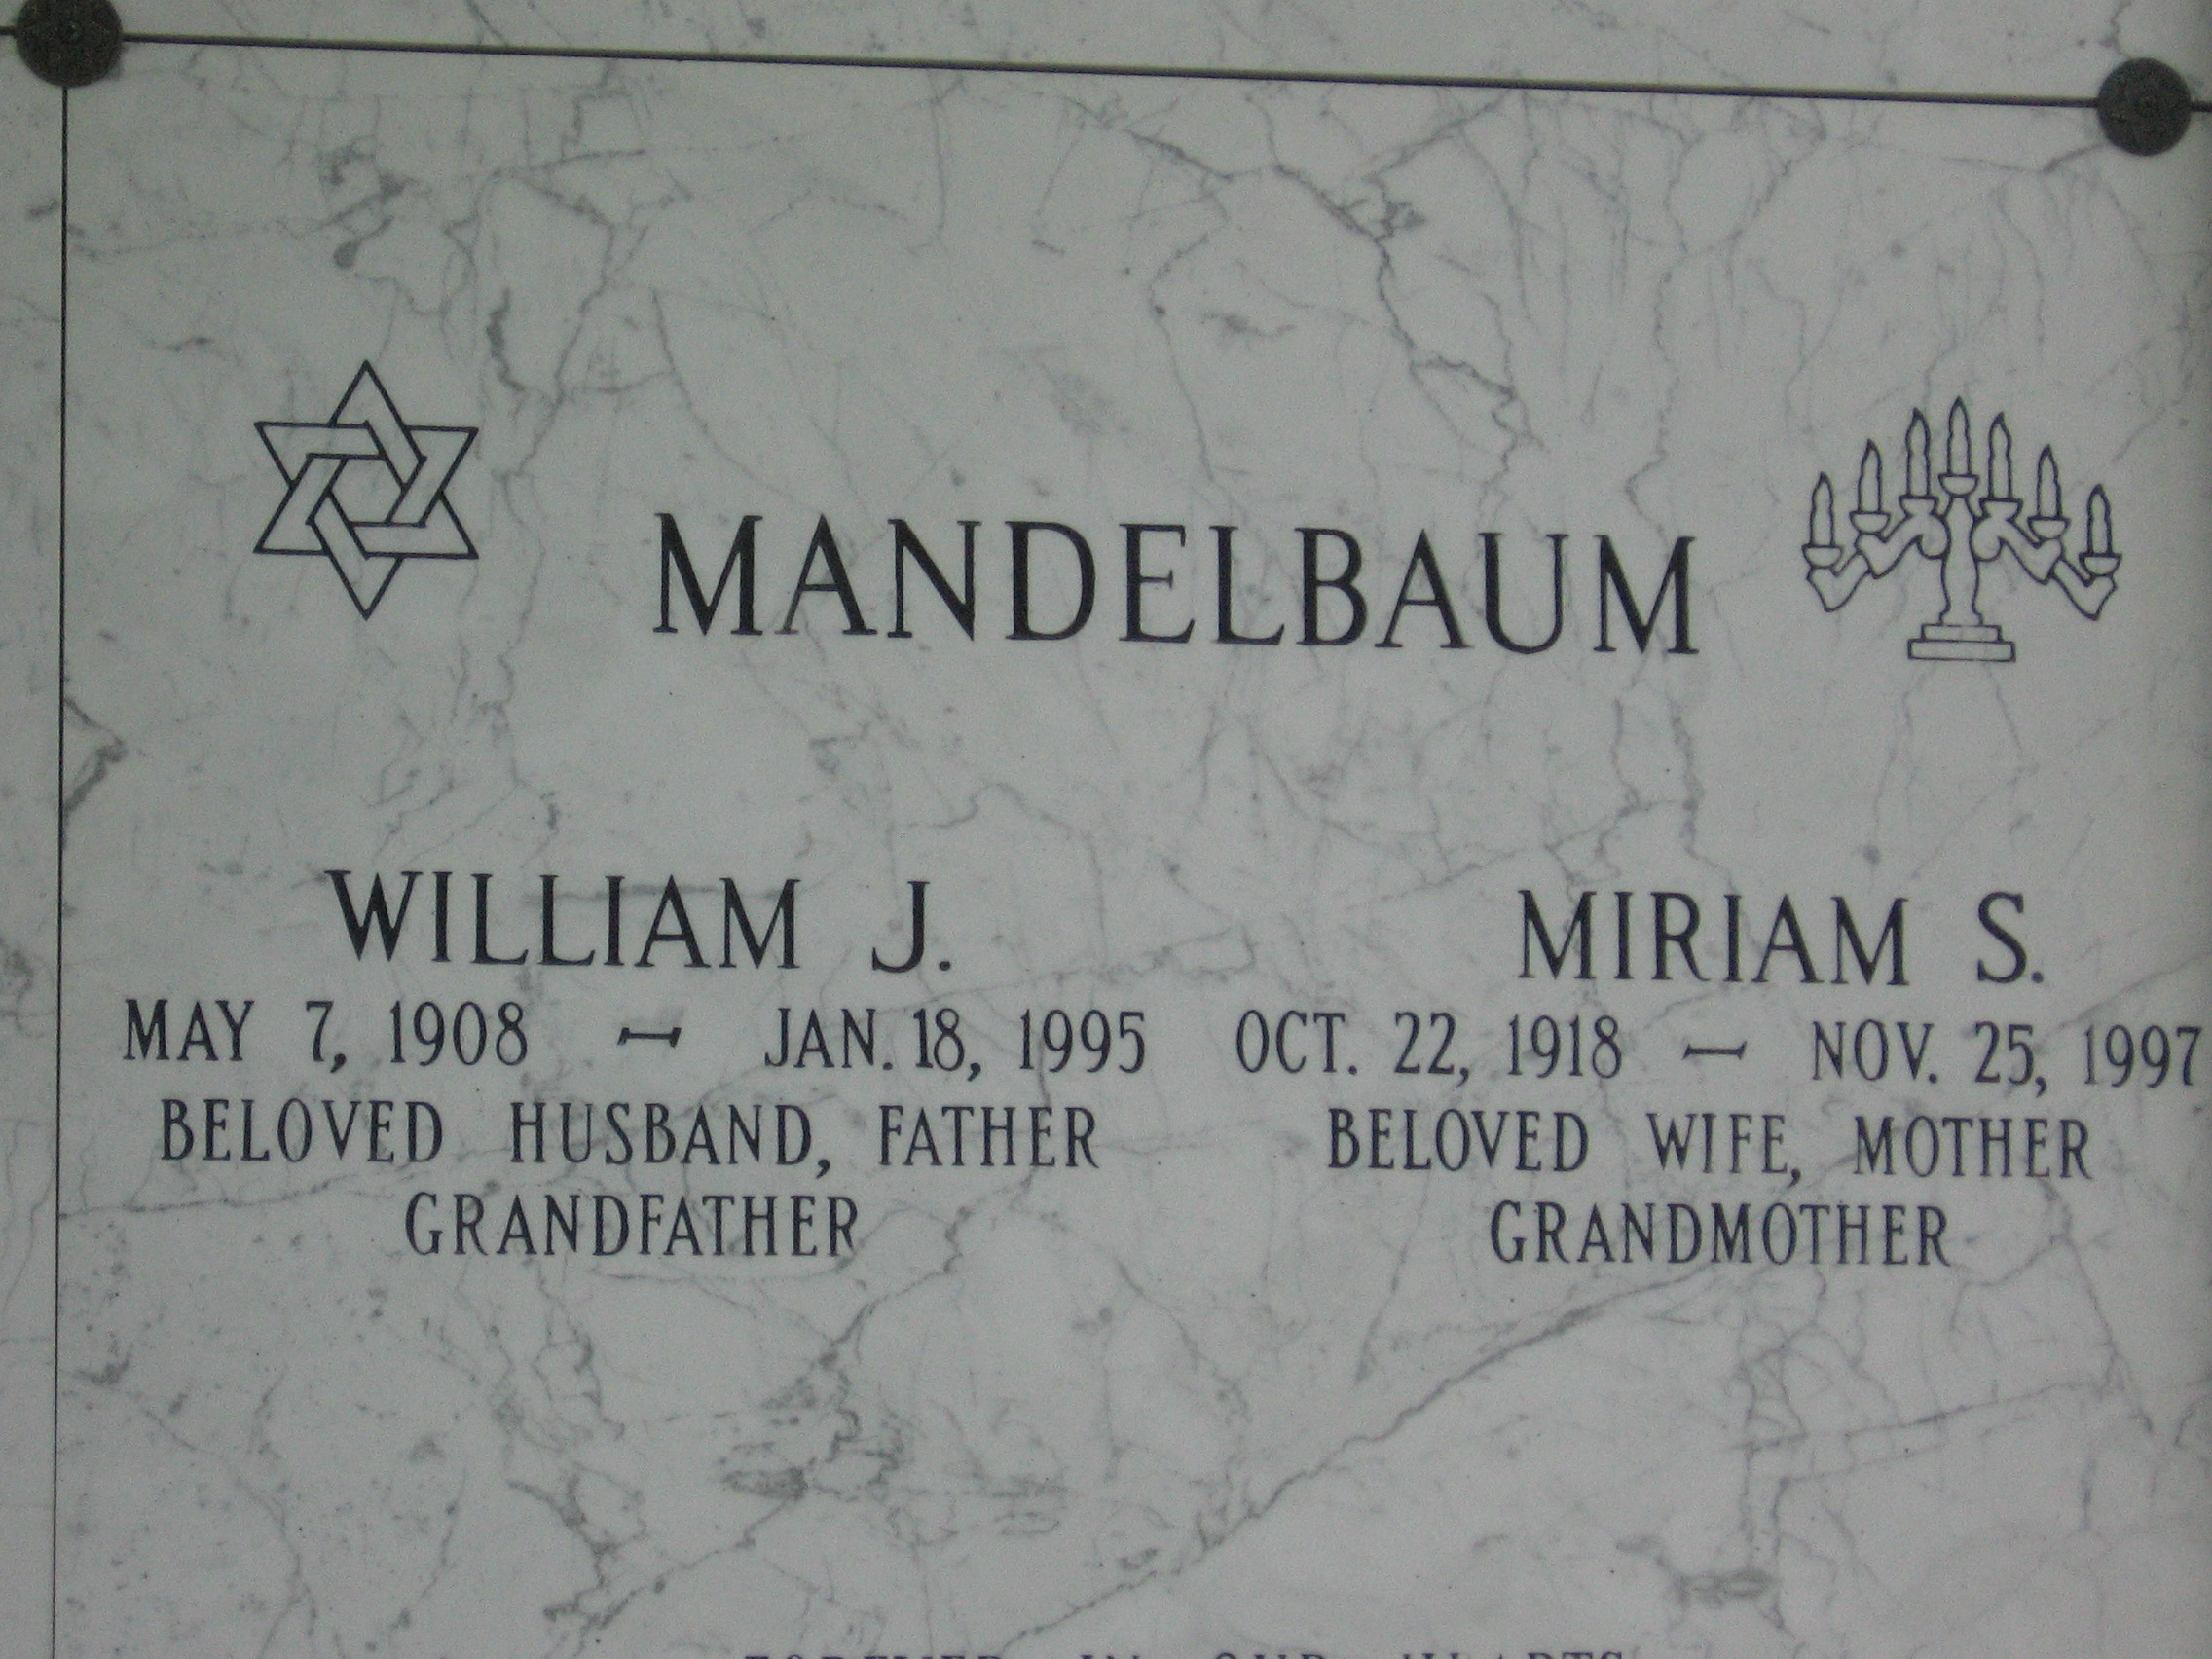 William J Mandelbaum